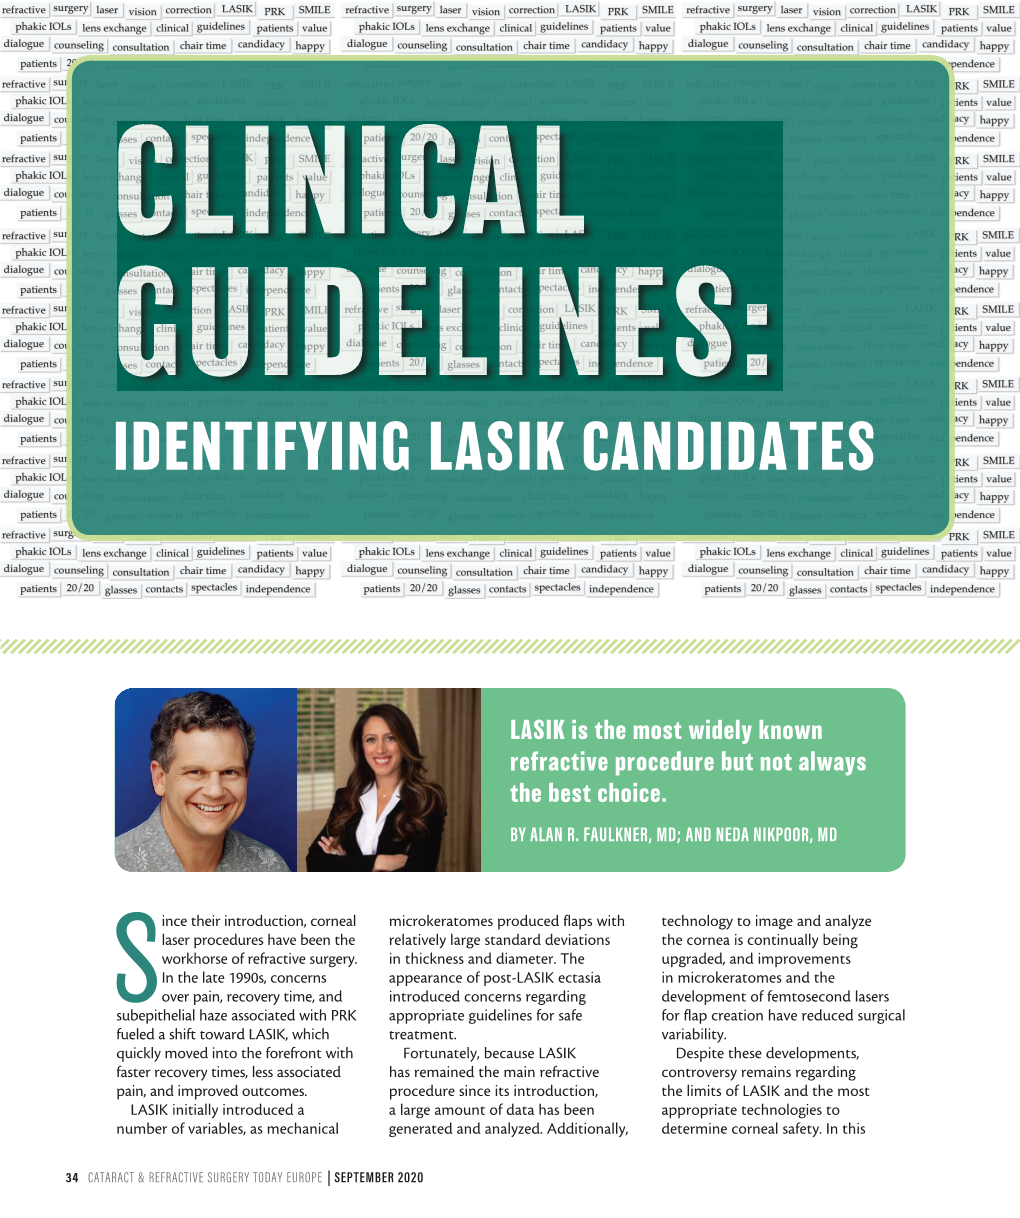 Identifying Lasik Candidates Identifying S Cataract & Refractive Surgery Today Europe